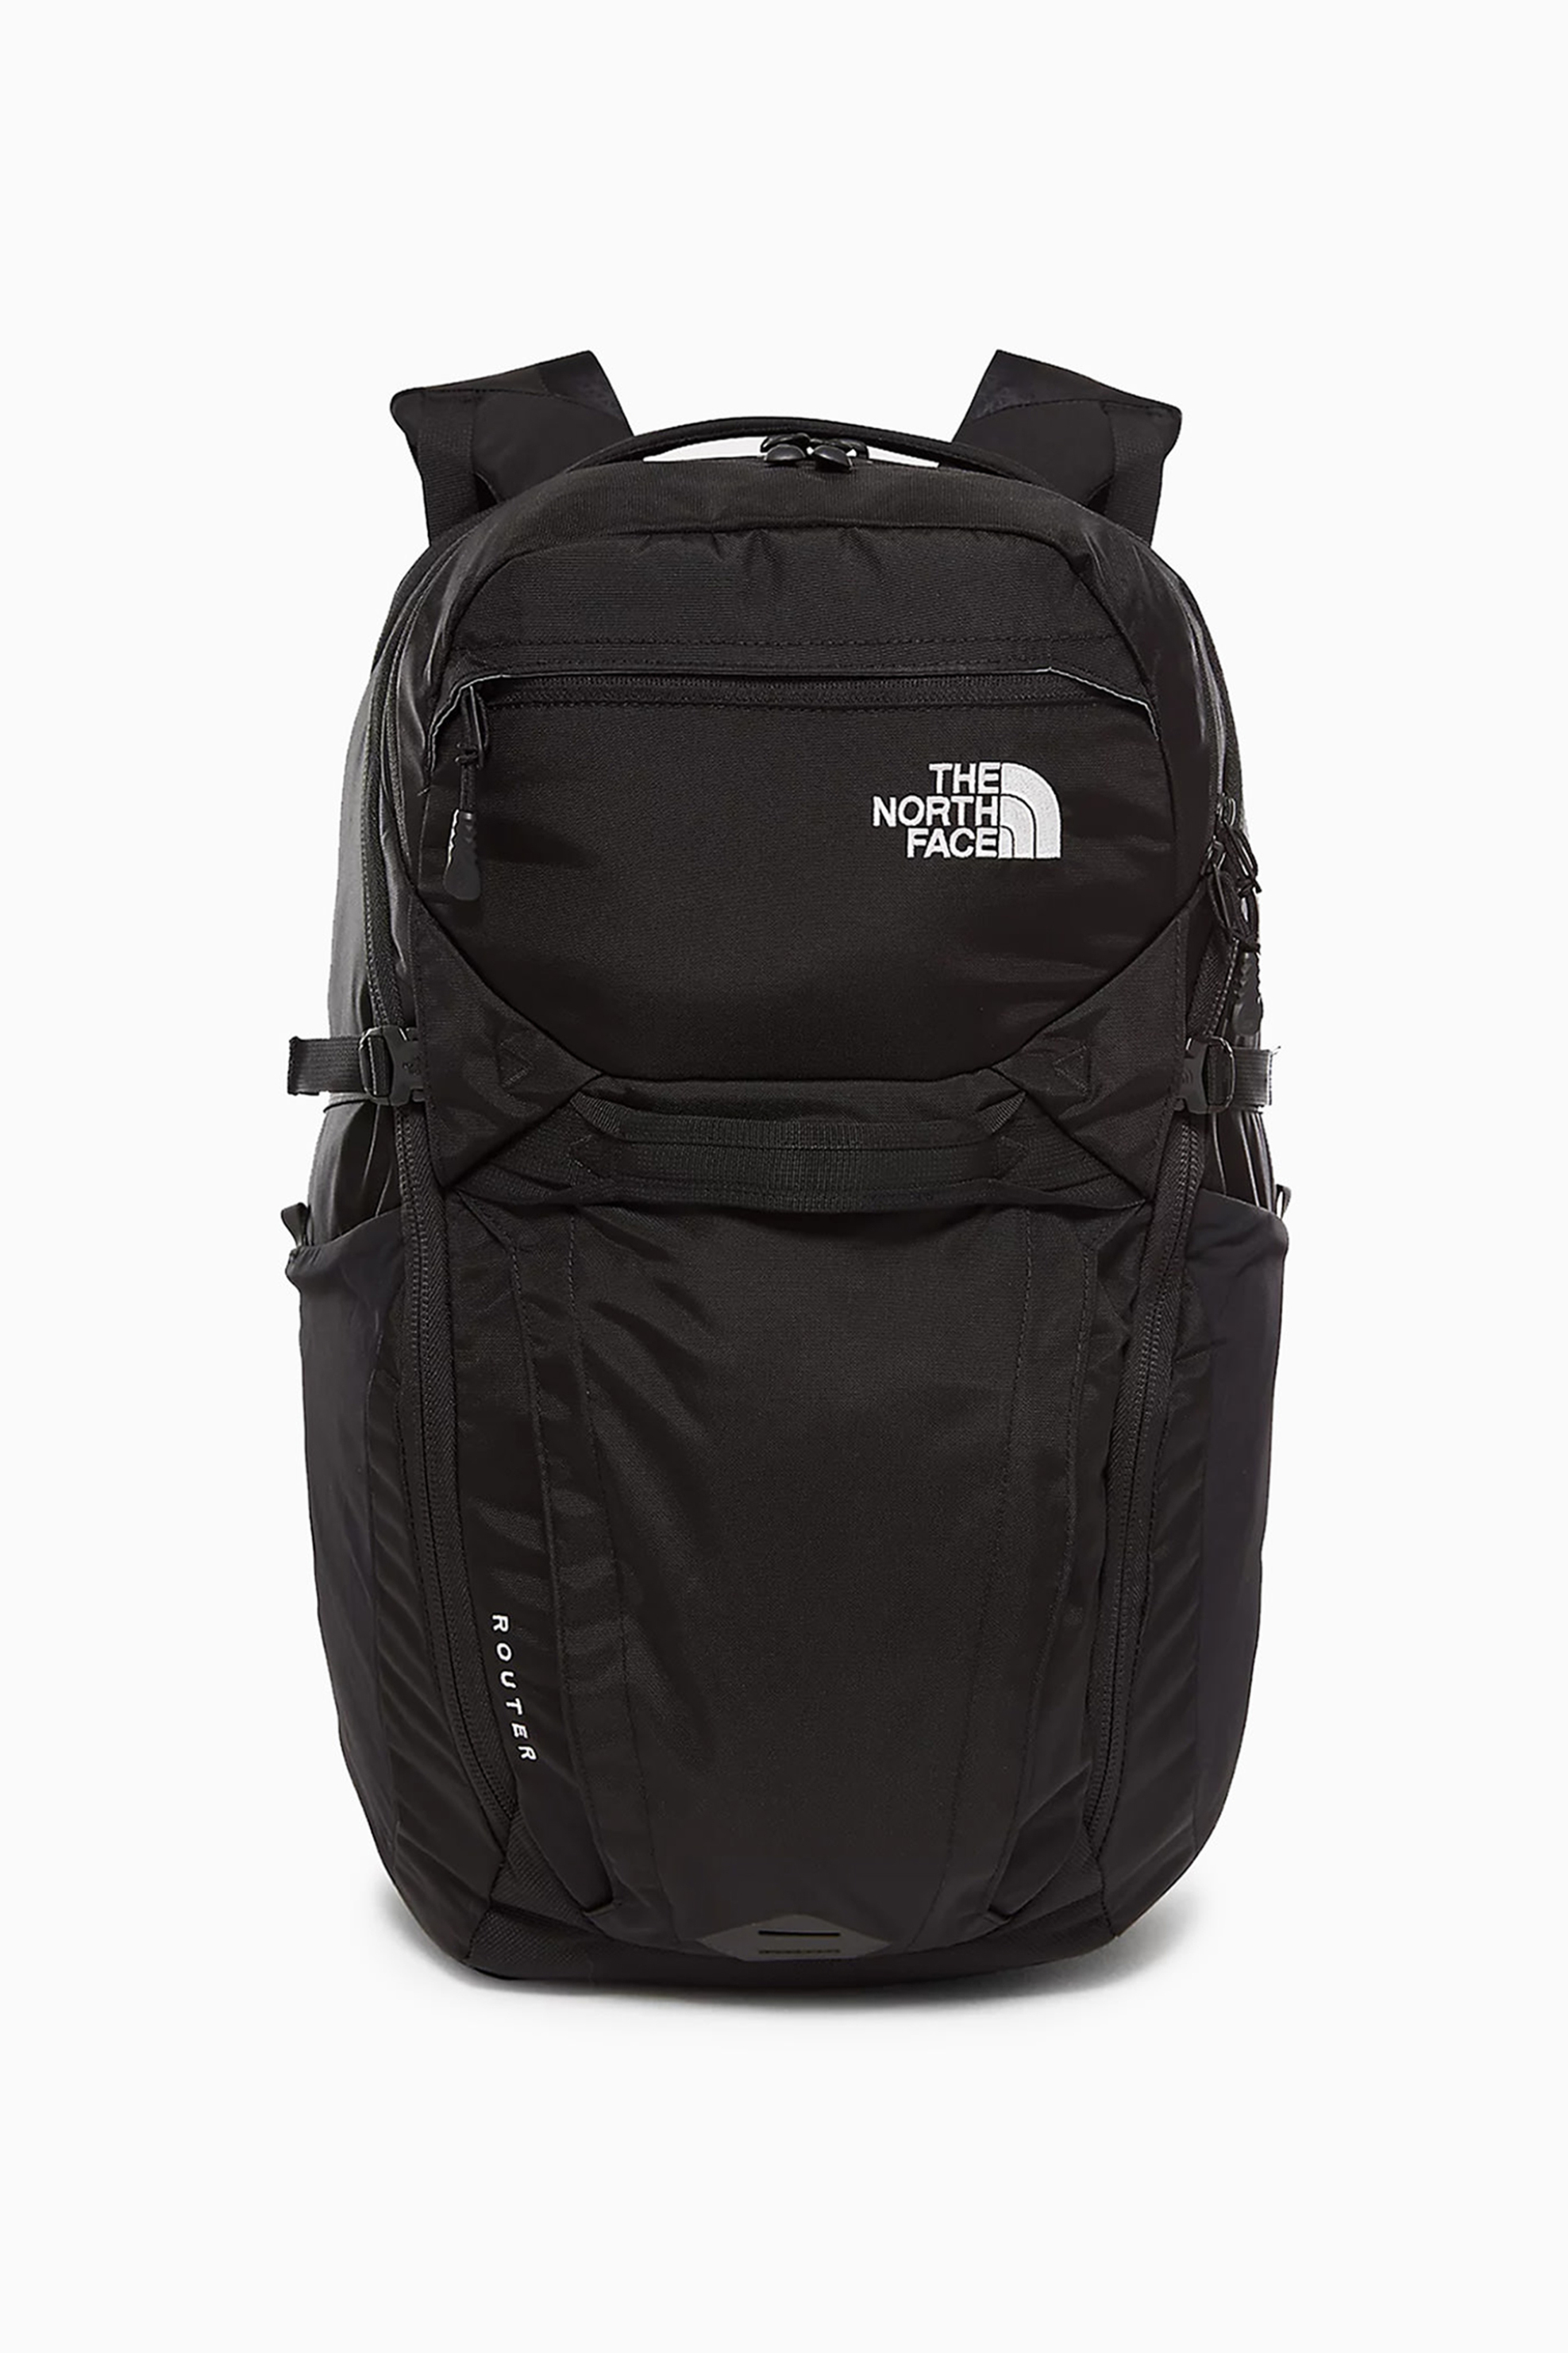 Ανδρική Μόδα > Ανδρικές Τσάντες > Ανδρικά Σακίδια & Backpacks The North Face unisex backpack μονόχρωμο "Base Camp Duffle" - NF0A52SFKX71 Μαύρο